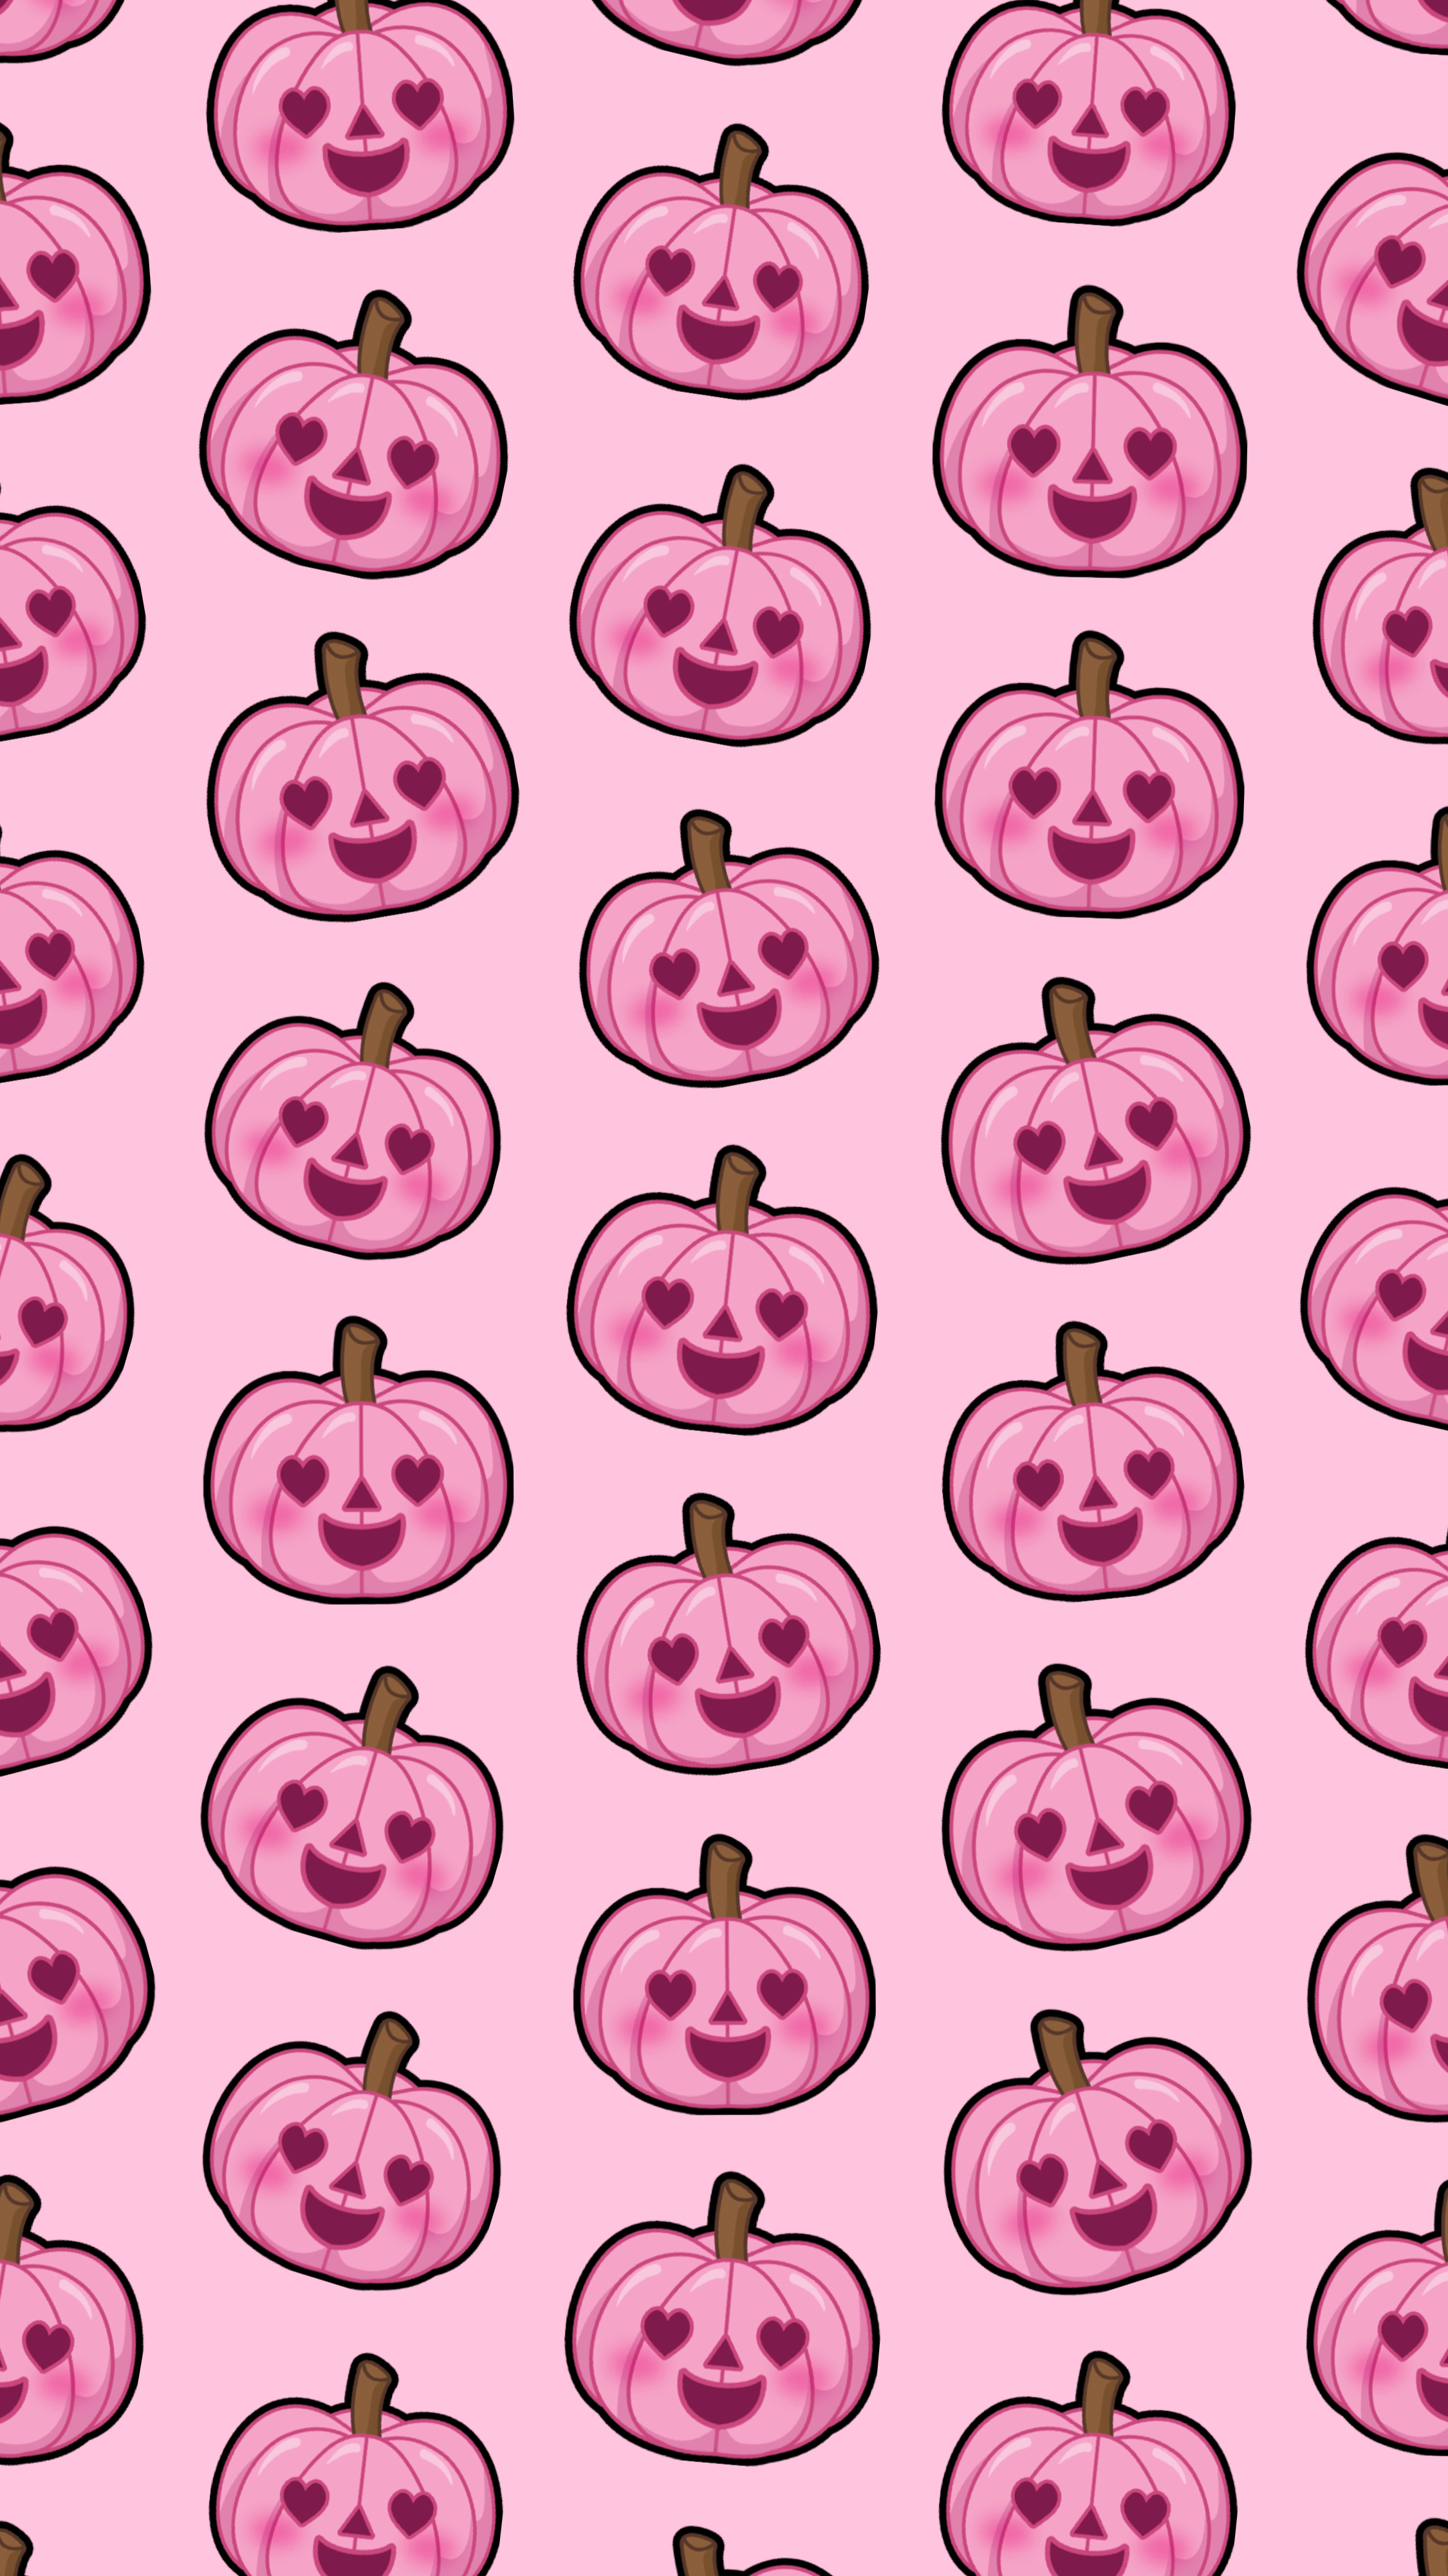 Pink Halloween Wallpaper Free .wallpaperaccess.com